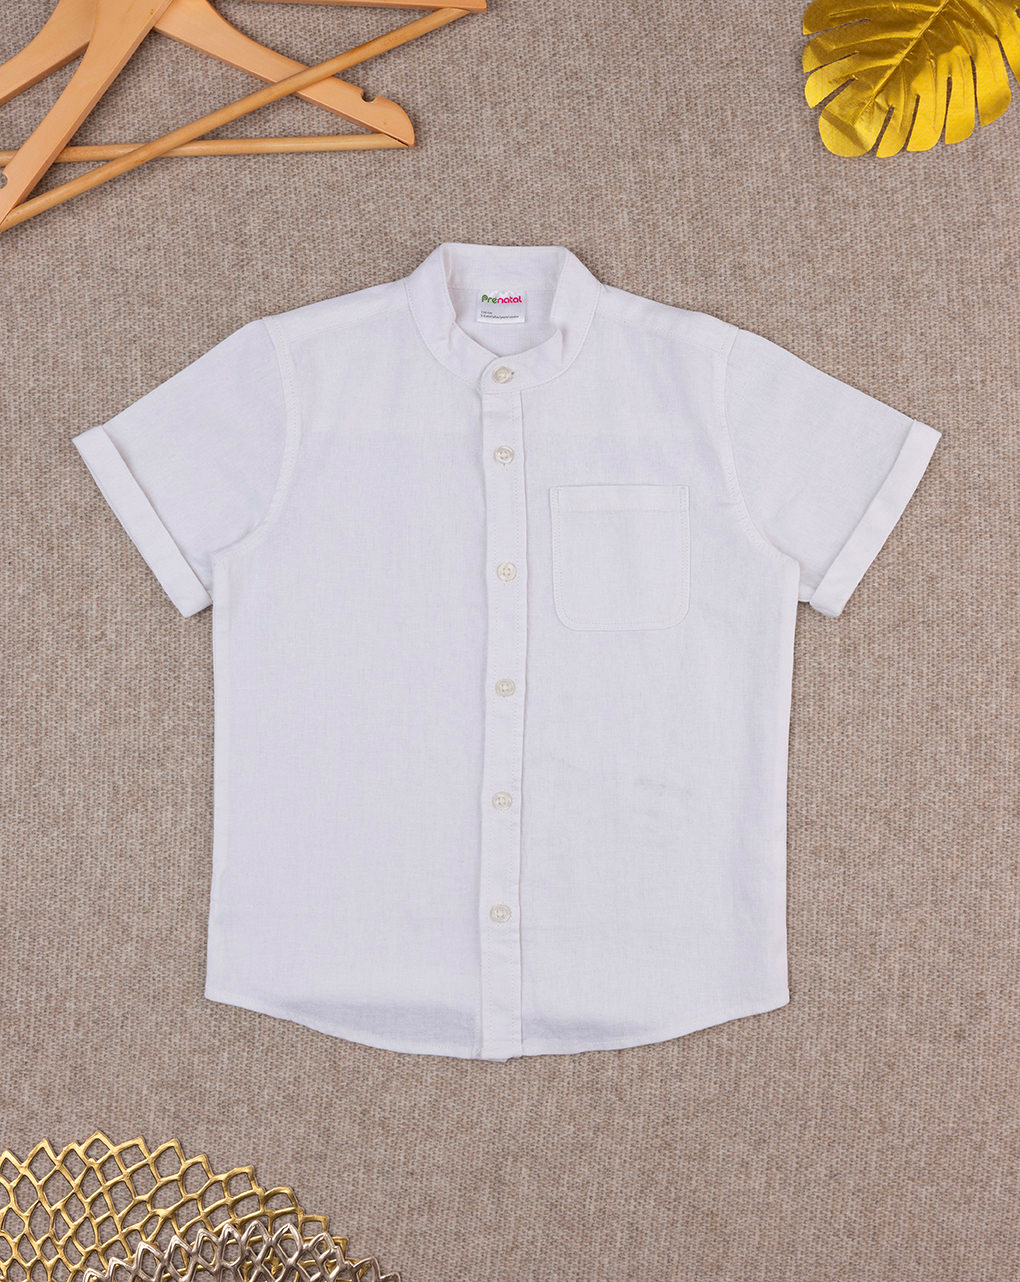 παιδικό πουκάμισο λινό λευκό για αγόρι